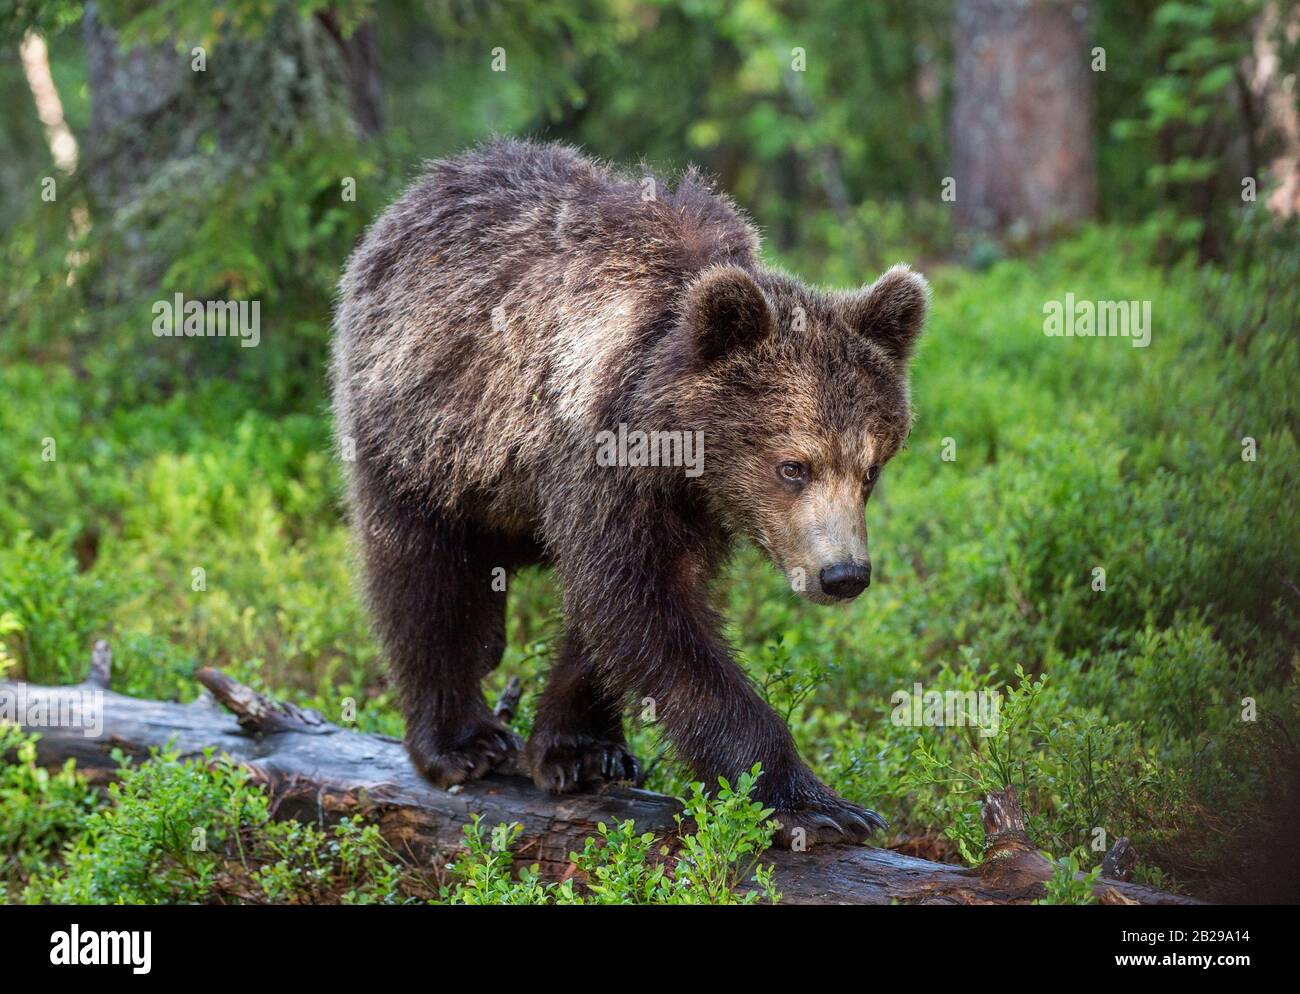 Cub of Brown Bear im Sommerwald. Grüner natürlicher Hintergrund. Natürlicher Lebensraum. Wissenschaftlicher Name: Ursus arctos. Stockfoto